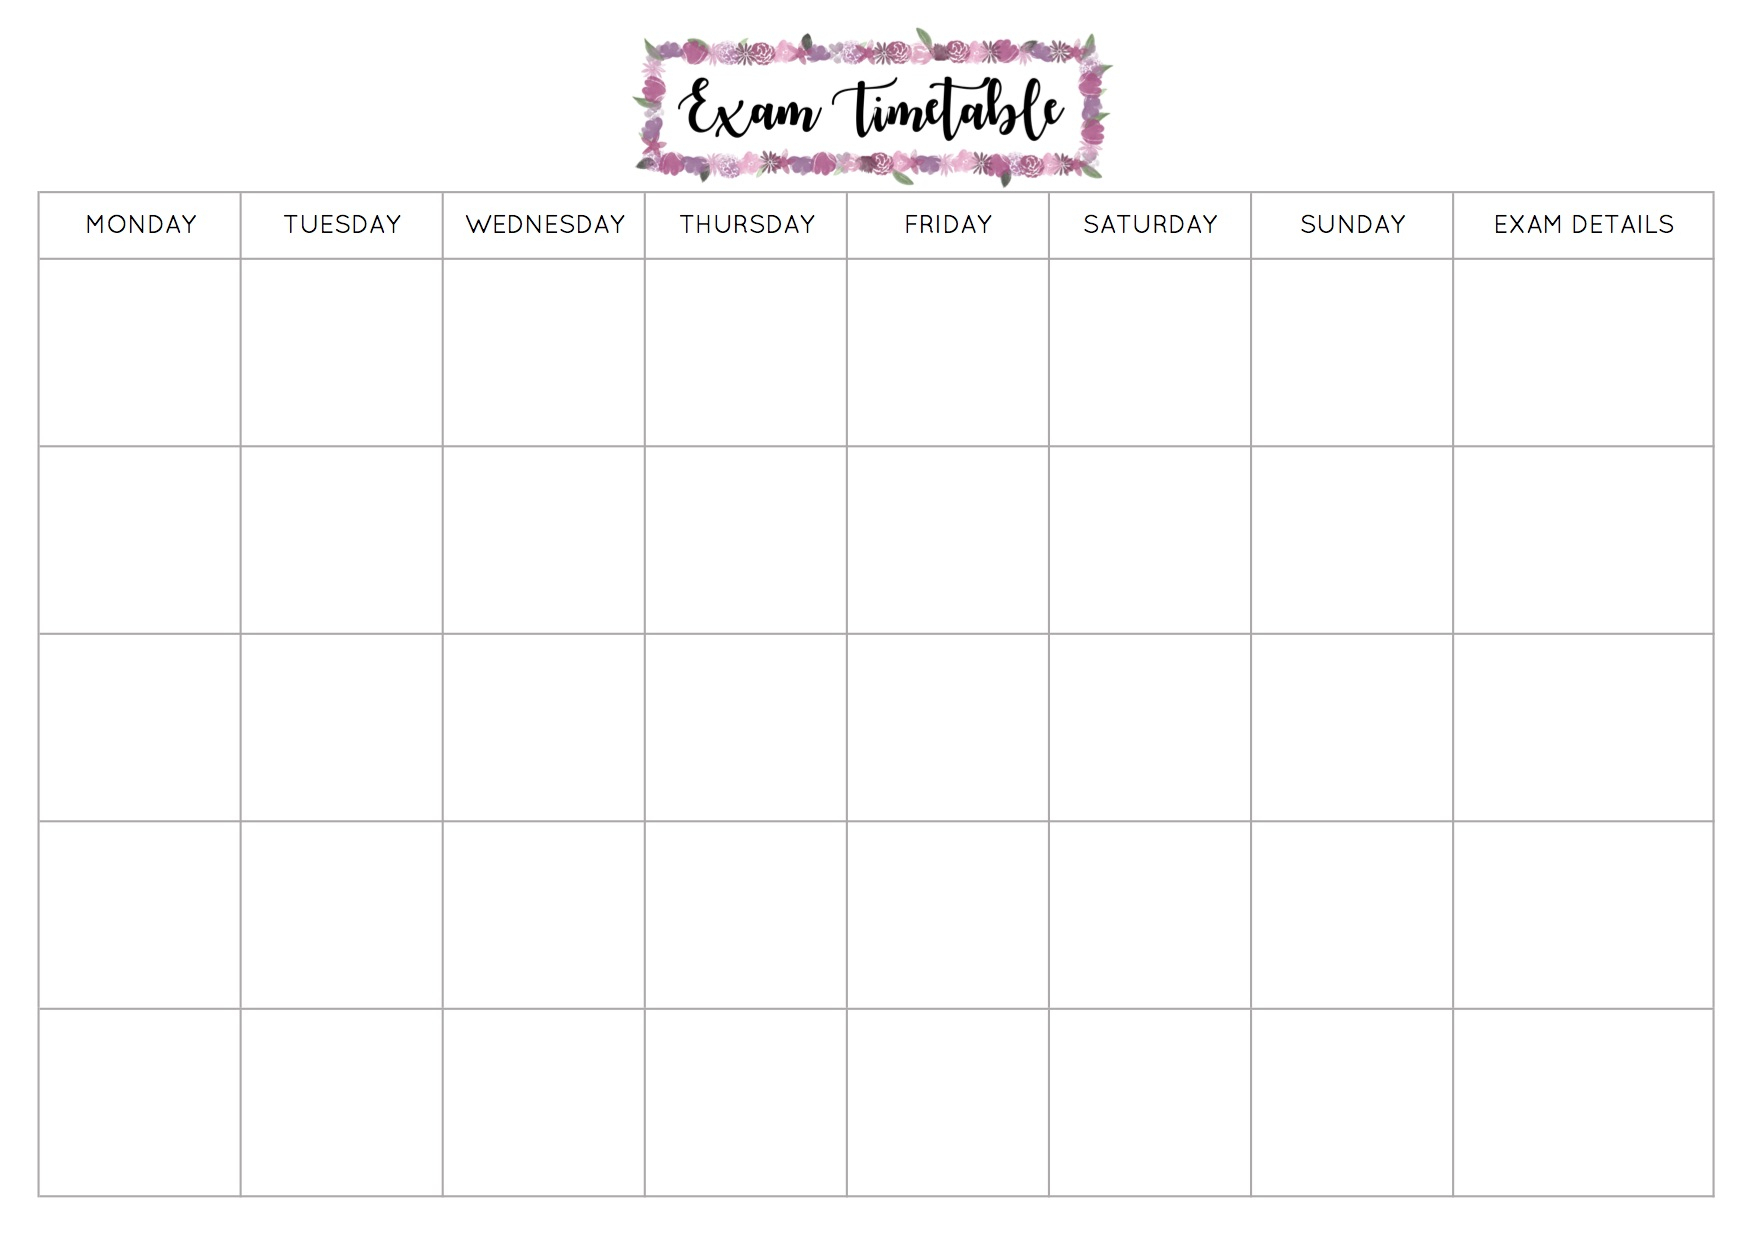 Free Exam Timetable Printable – Emily Studies